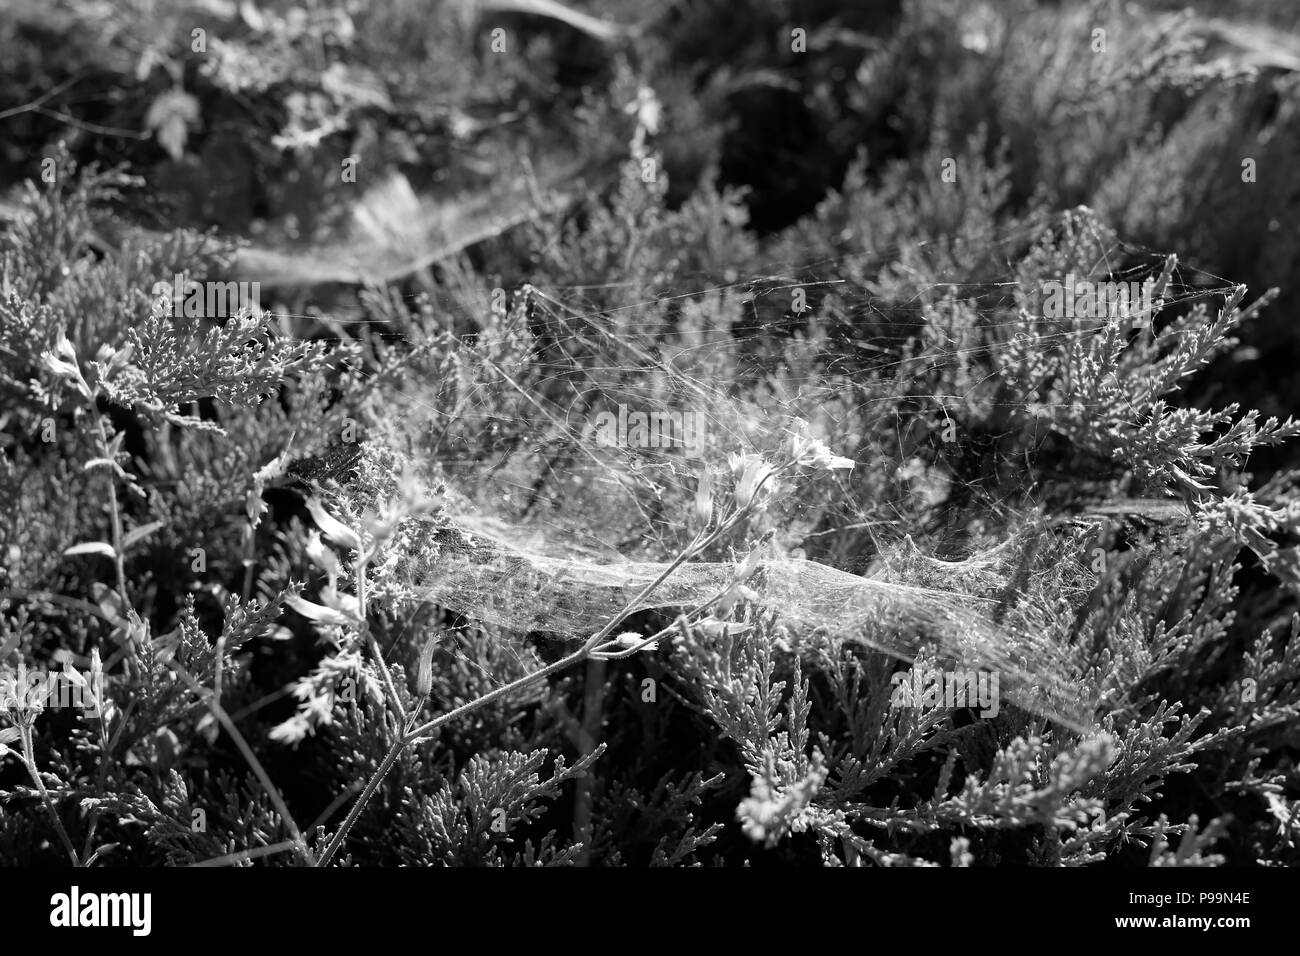 Portrait Of Spider Web sur les plantes pendant l'été en noir et blanc Banque D'Images